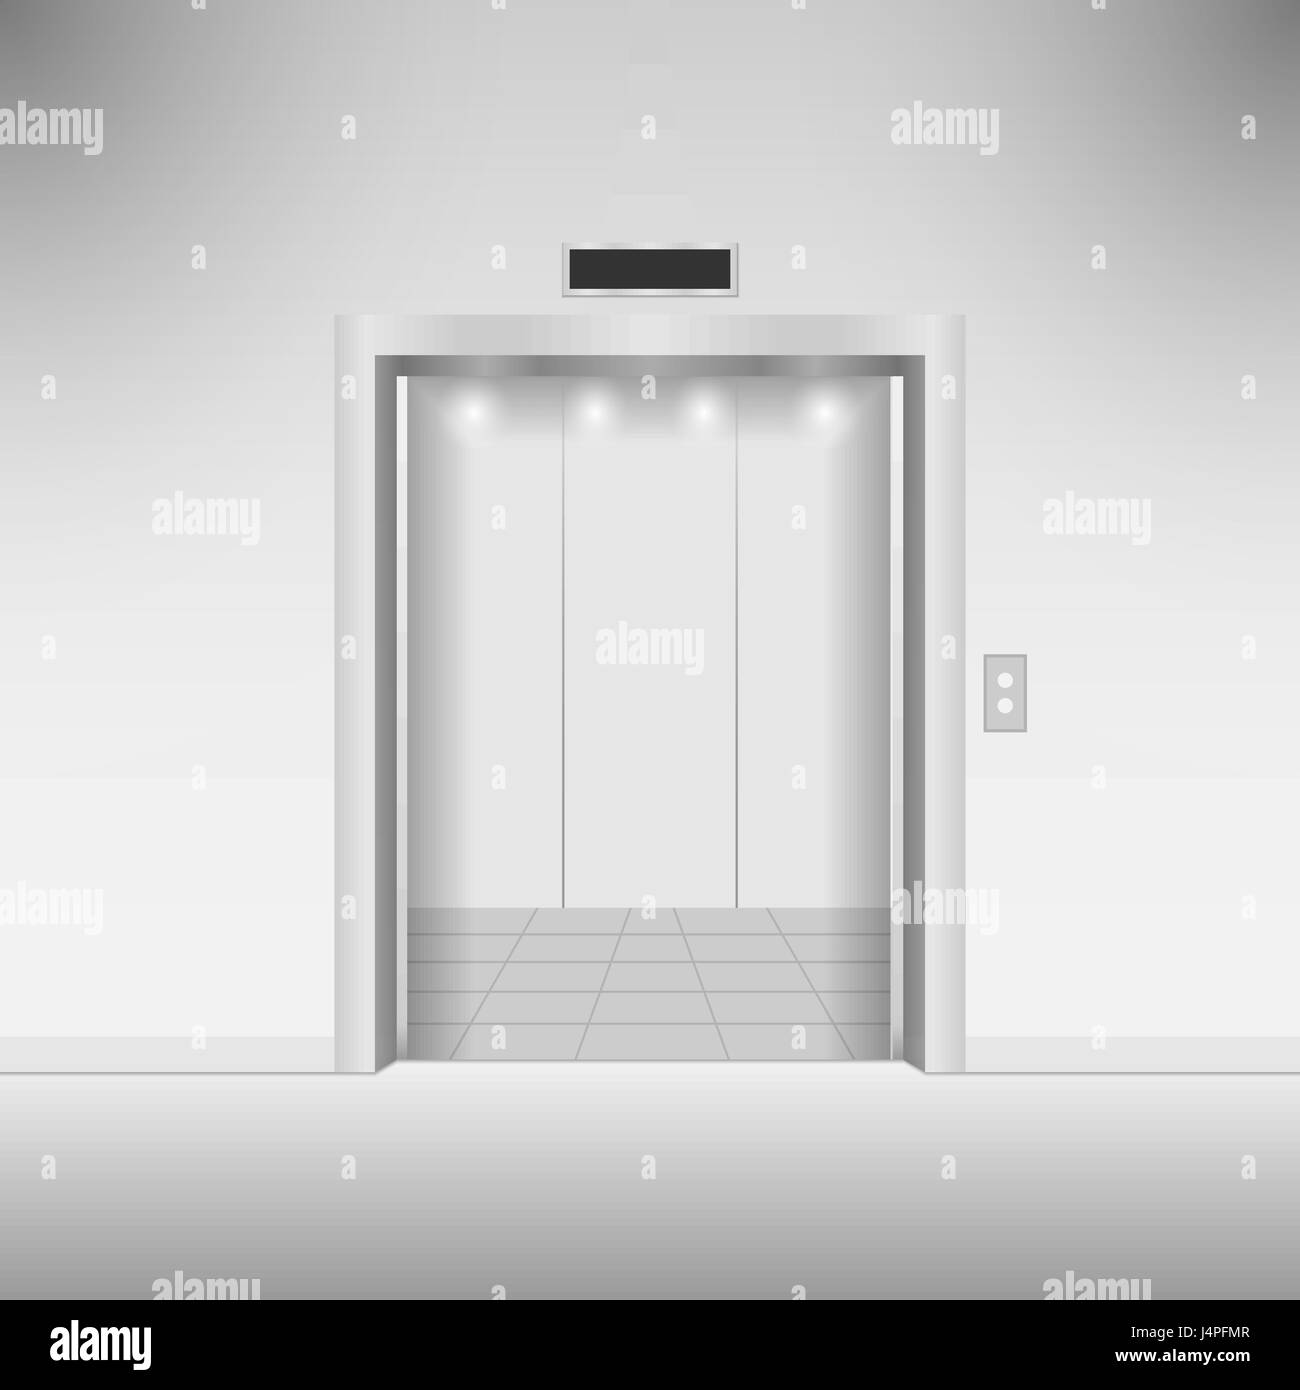 Open chrome metal elevator doors. Vector illustration Stock Vector